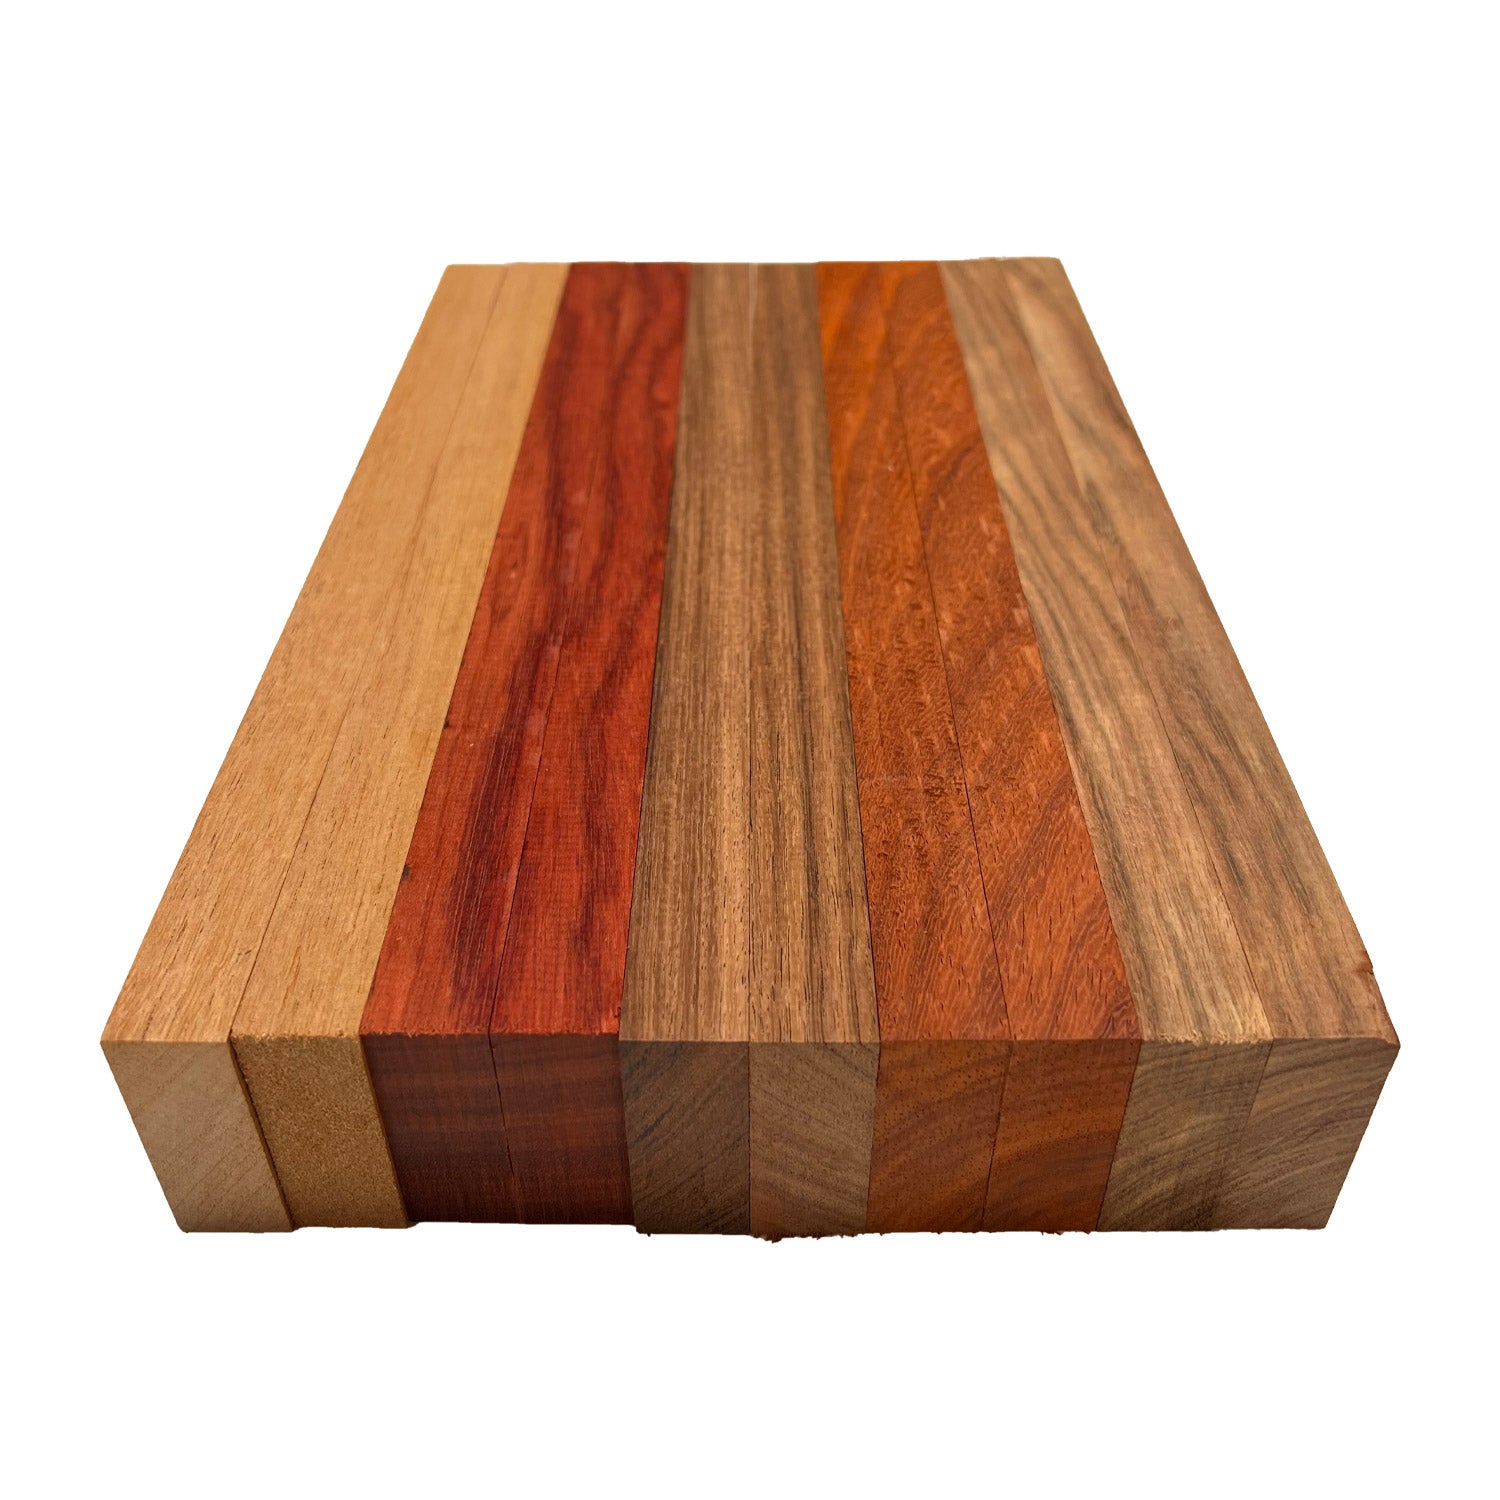 Tabla de madera de nogal - 3/4 x 4 (2 piezas) (3/4 x 4 x 12)